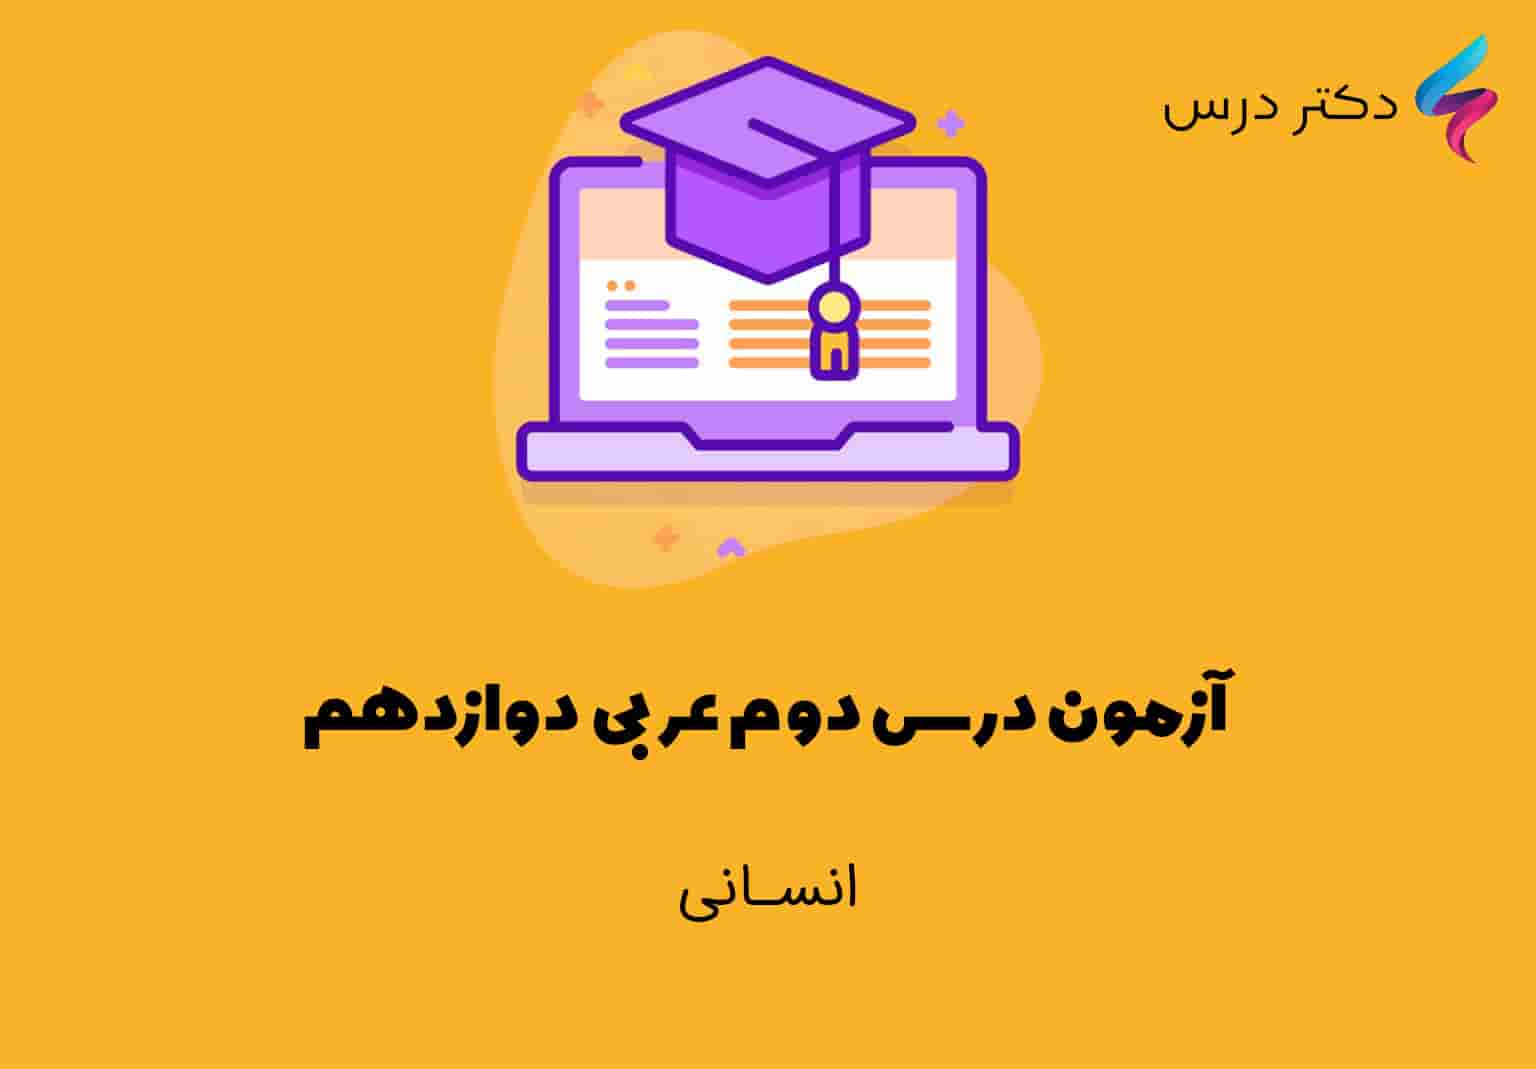 آزمون درس دوم عربی دوازدهم انسانی